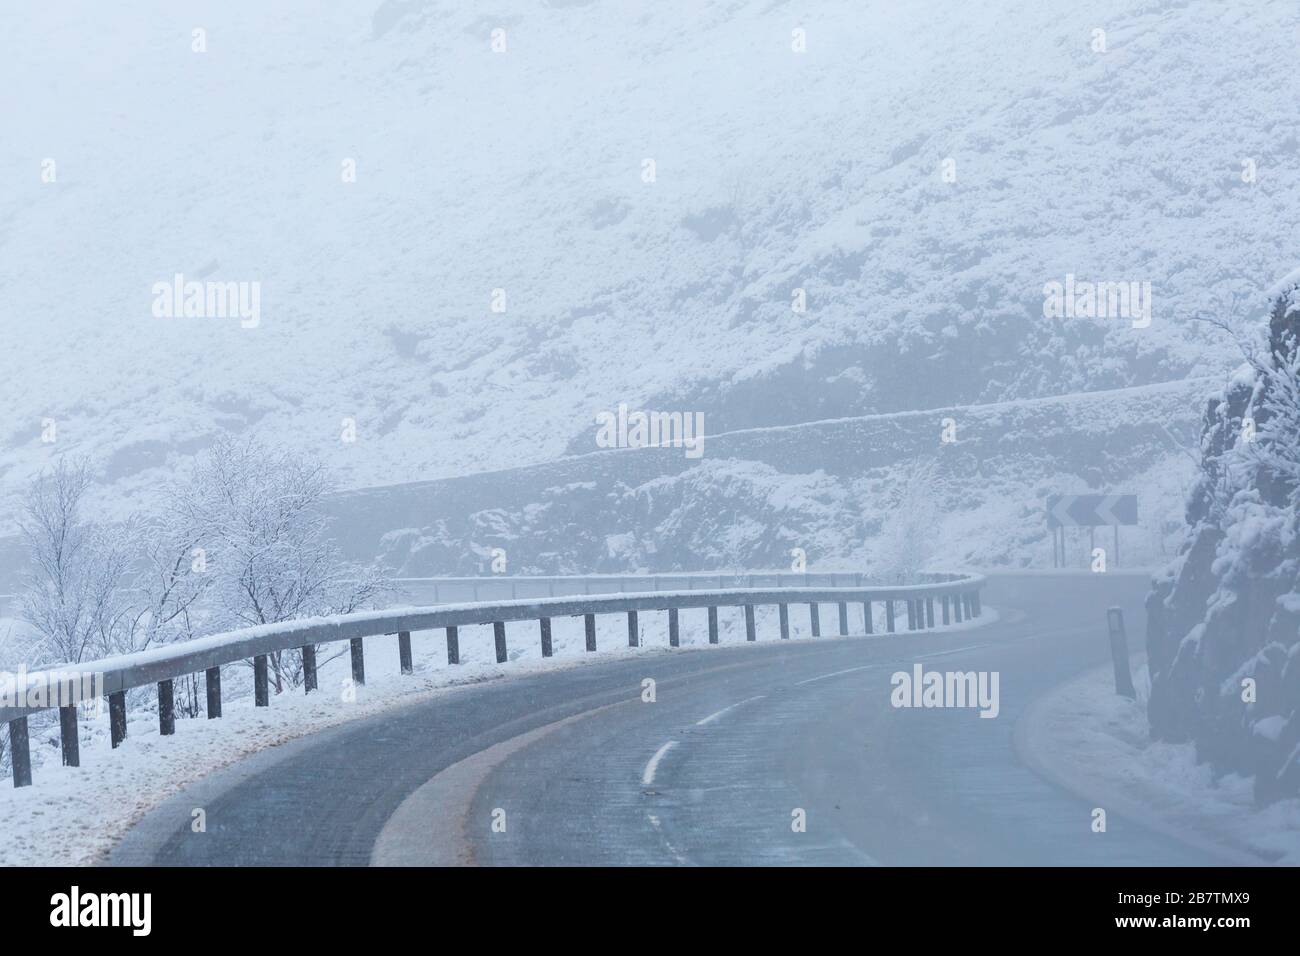 Virages sur la route de l'A82 le jour de l'hiver dans des conditions enneigées autour de Rannoch Moor, Highlands, Ecosse en hiver Banque D'Images